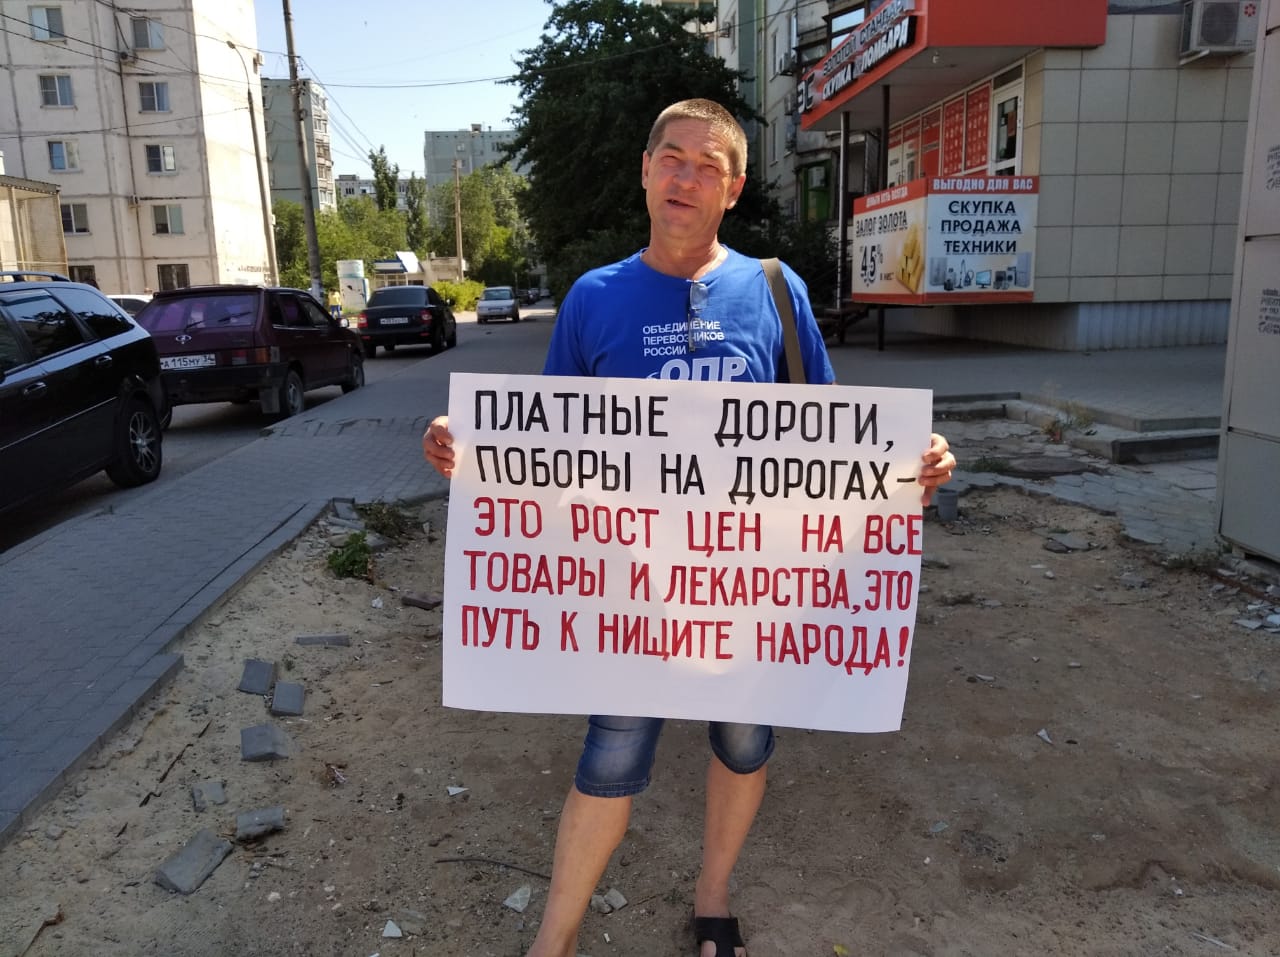 Сергей Каменев на пикете в Волгограде 11 июля 2020 года. Фото Татьяны Филимоновой для "Кавказского узла".